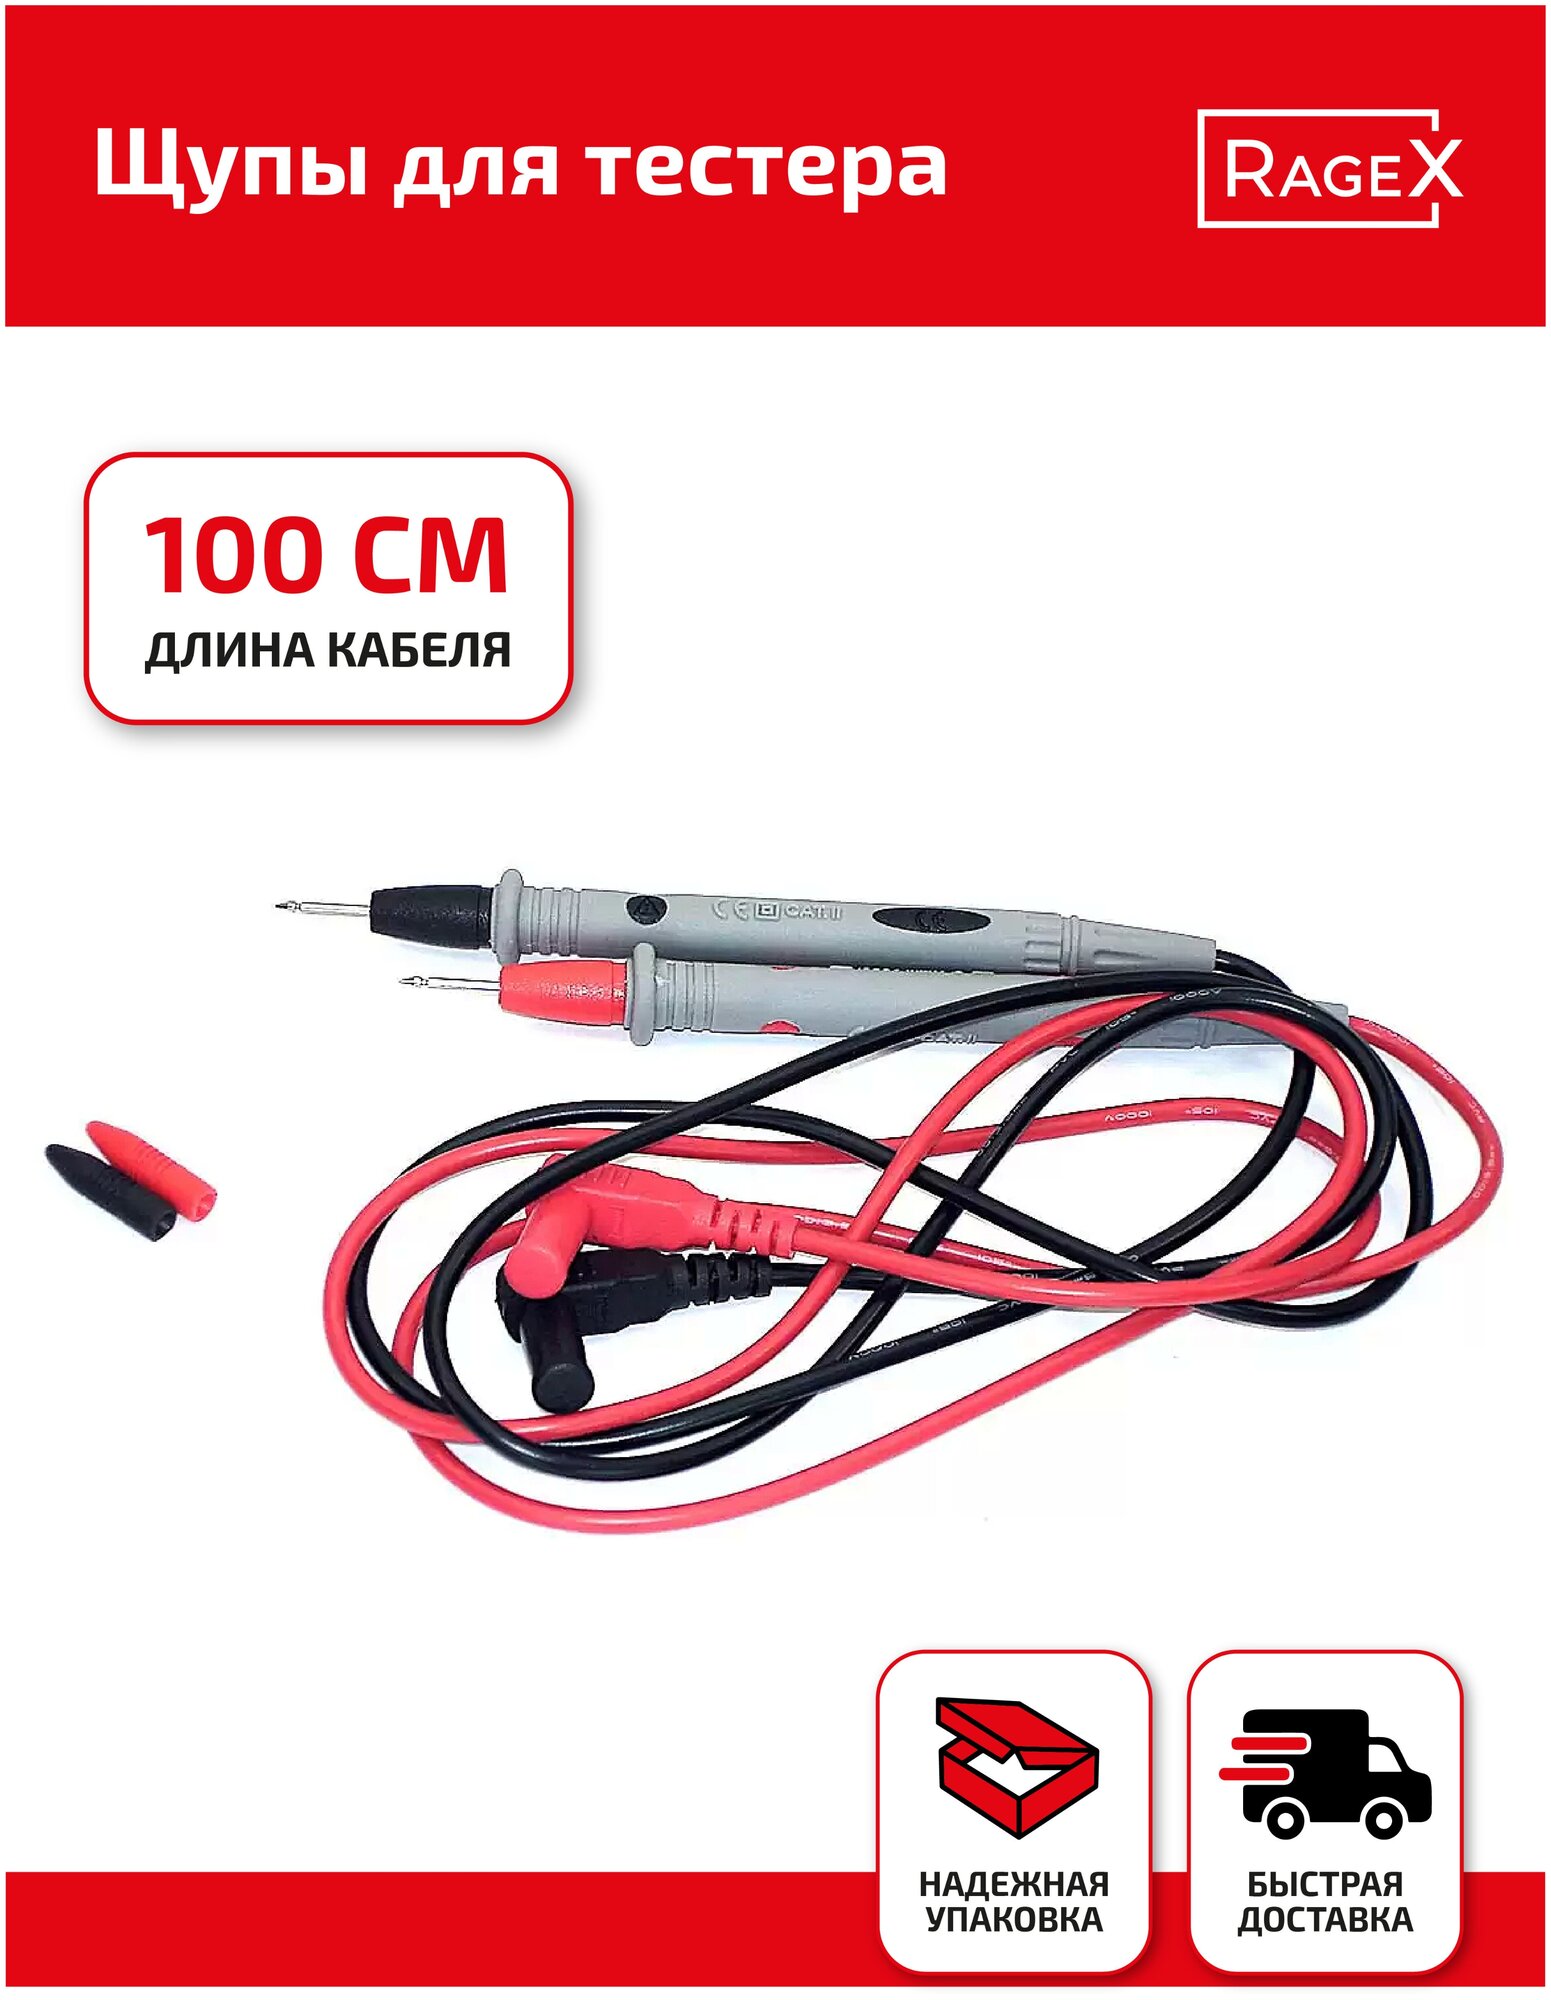 Щупы для тестера (мильтиметра) LEK-B01 никилерованный наконечник кабель 100 см.